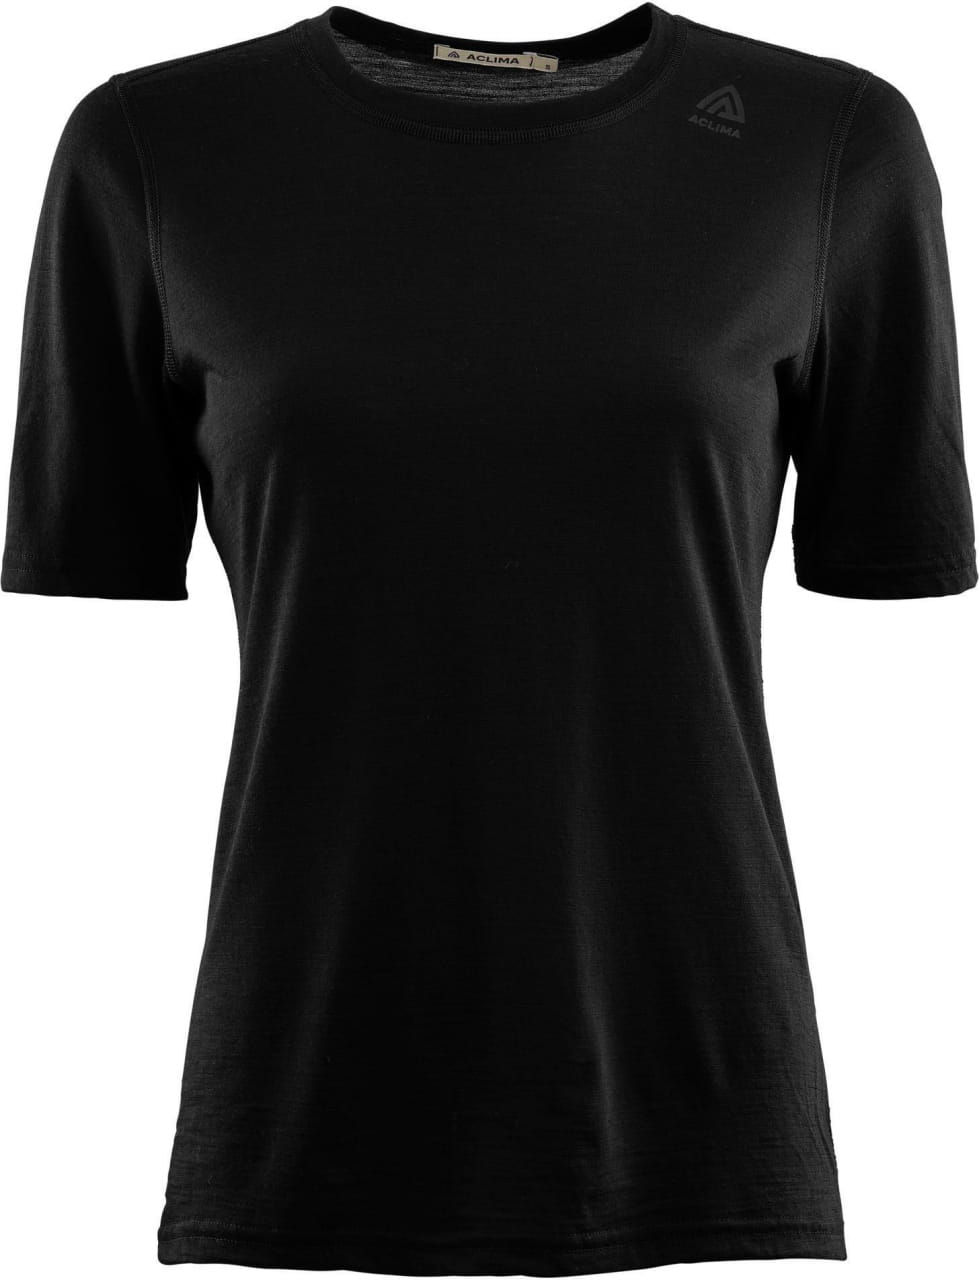 Sporthemd für Frauen Aclima LightWool Undershirt Tee